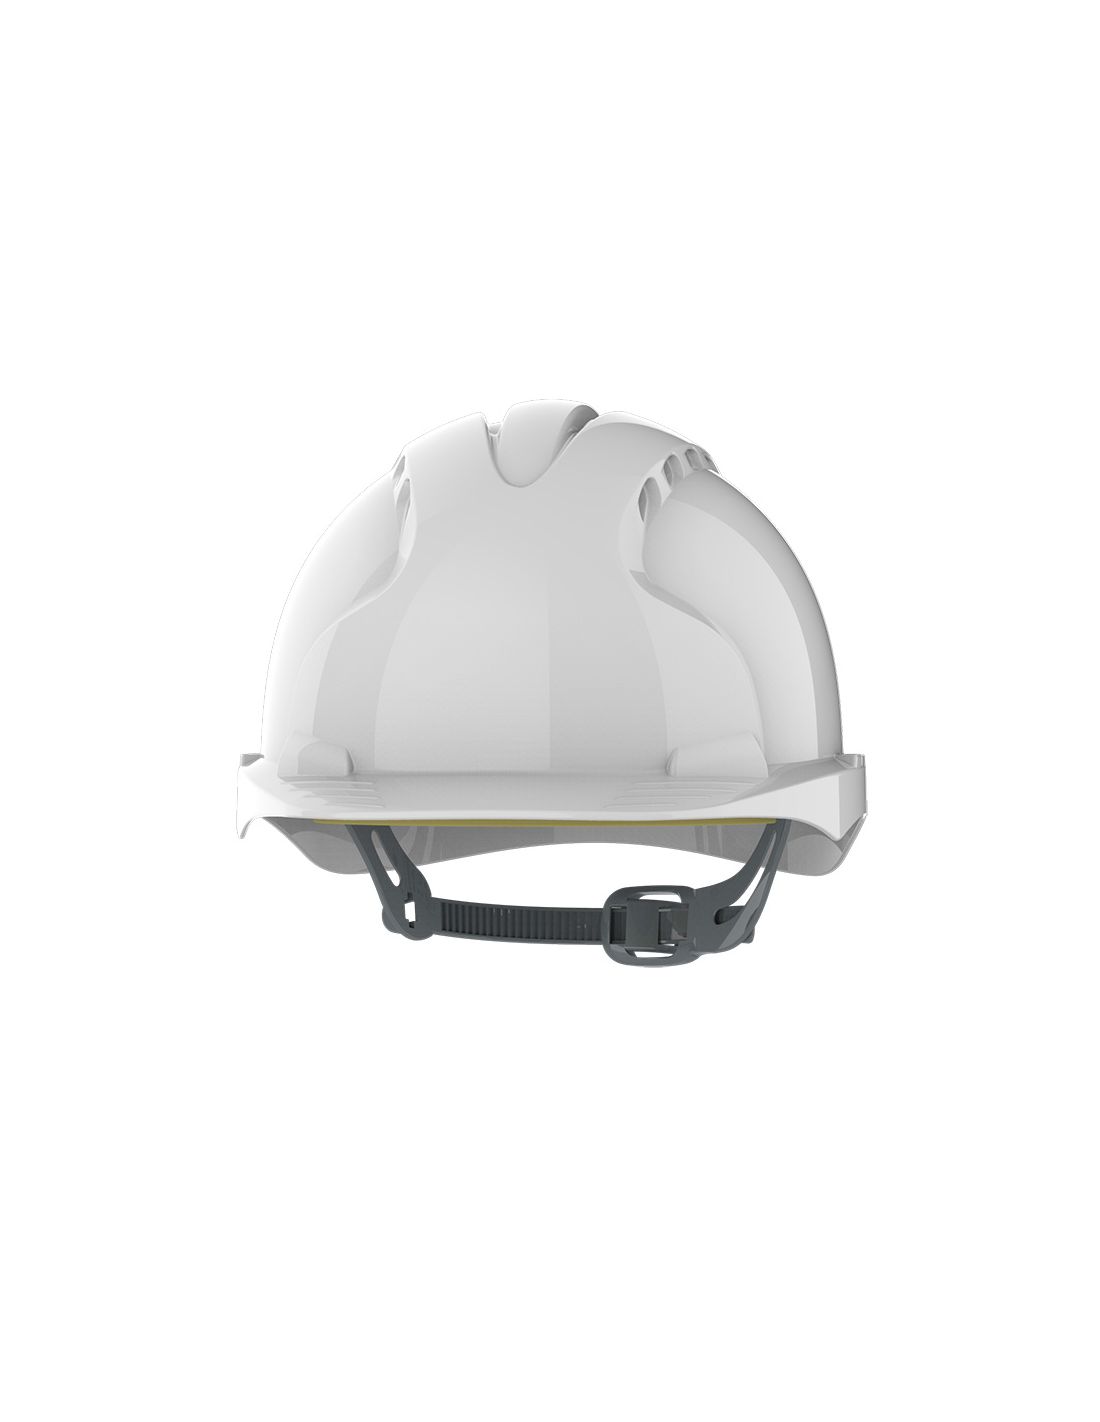  visuel Casque EVO®2 ventilé - glissière - blanc JSP Safety vue de face